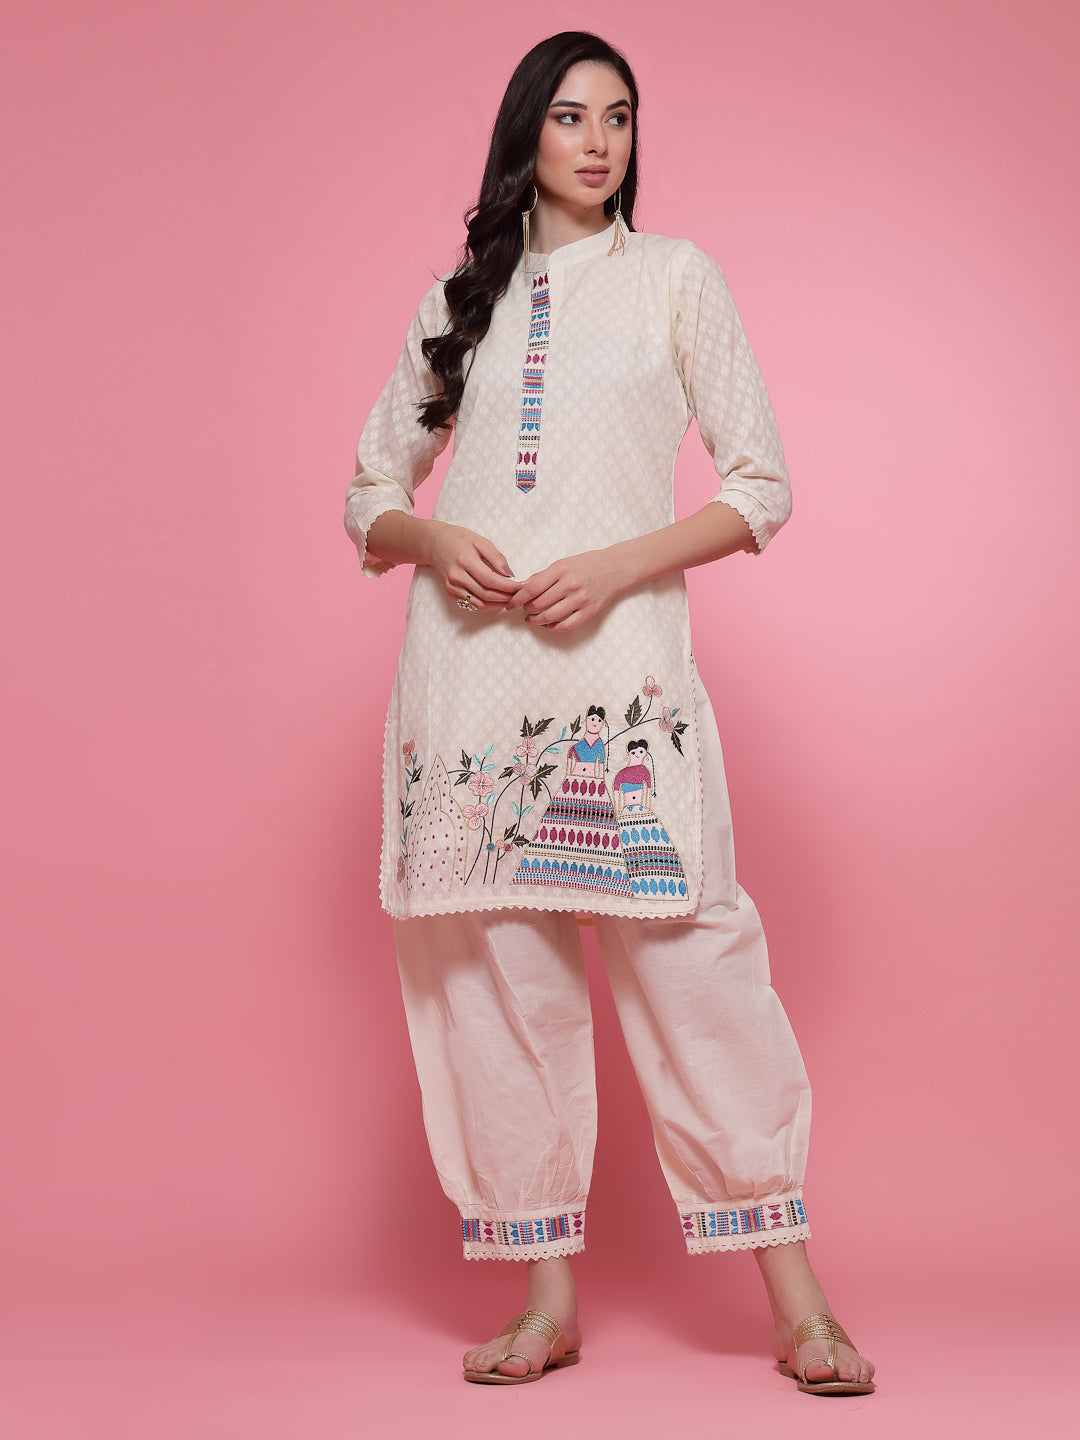 Sleeveless Kurti Design: ये है 5 स्लीवलेस कुर्ती का शानदार कलेक्शन, इनसे  मिलेगी जबर स्टाइल और नहीं आएगा पसीना - sleeveless kurti new design women  must try this summer to look beautiful